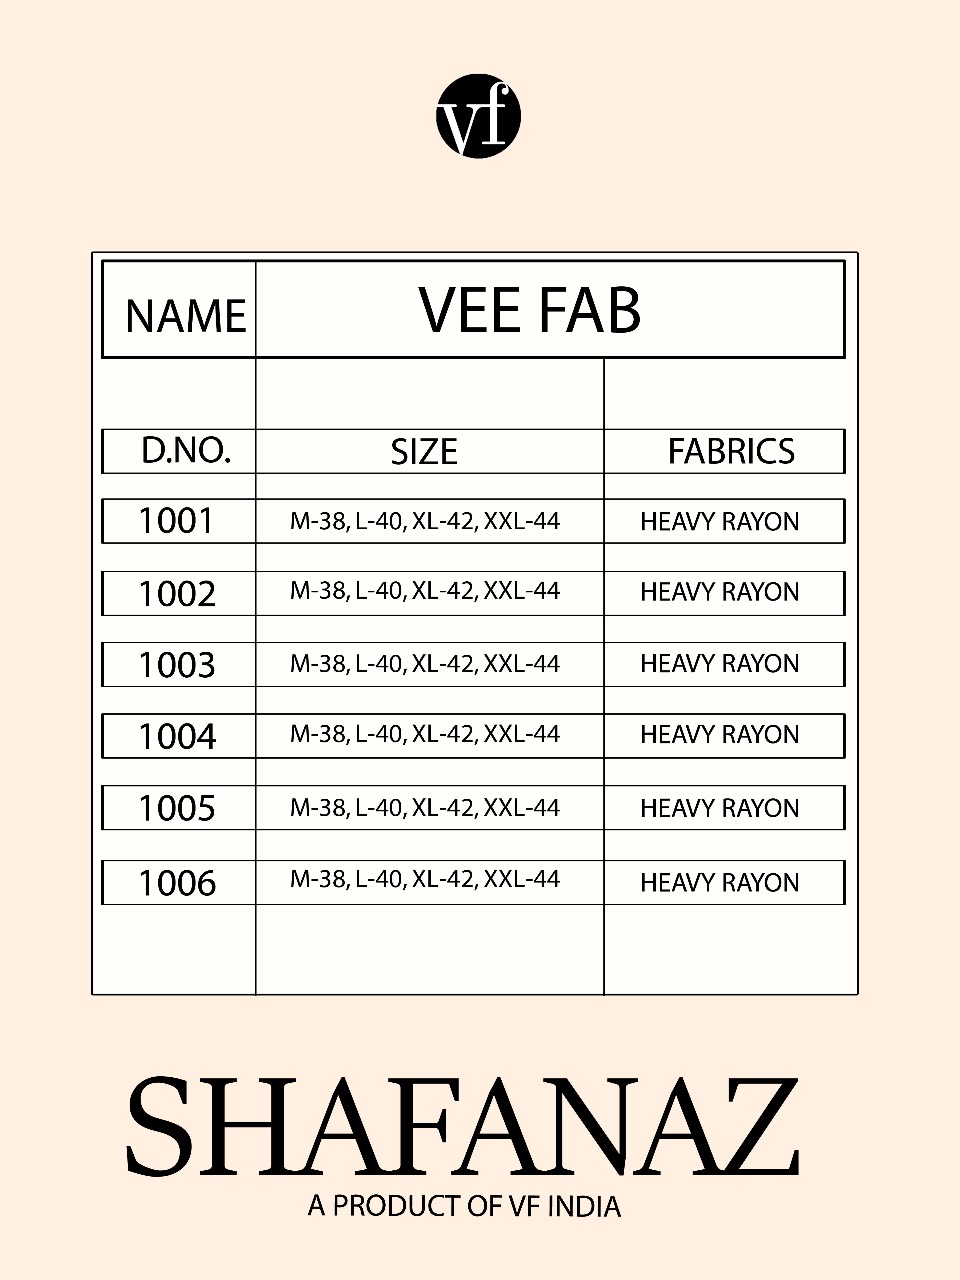 Vee fab india shafanaz long flair Kurties collection Dealer